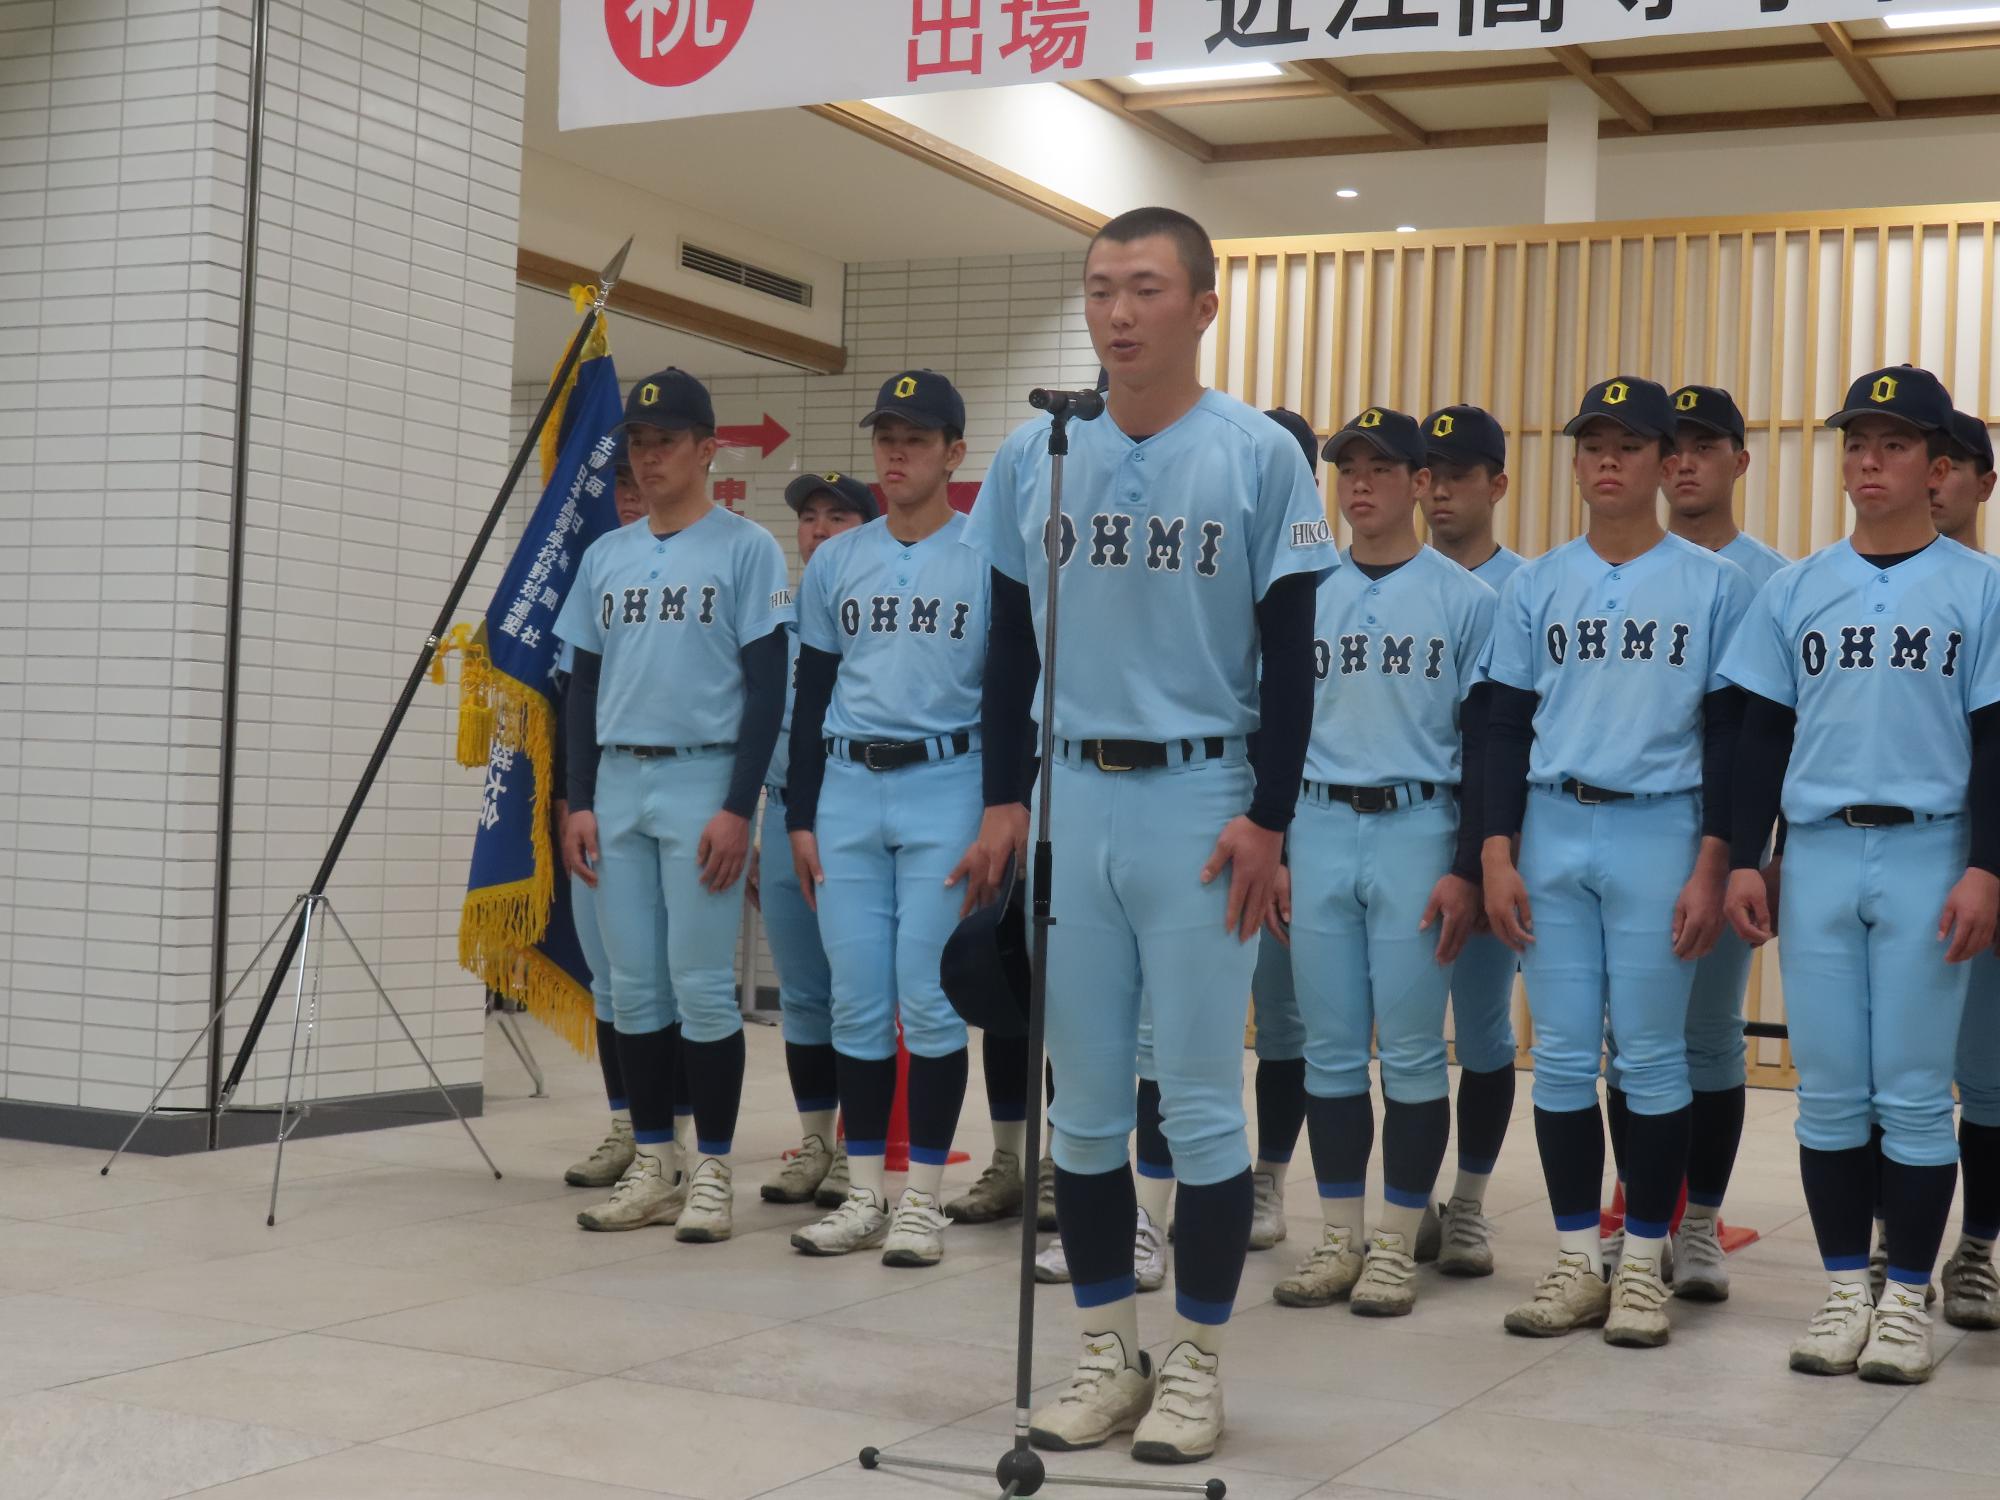 近江高等学校野球部主将大石選手の決意の言葉の様子